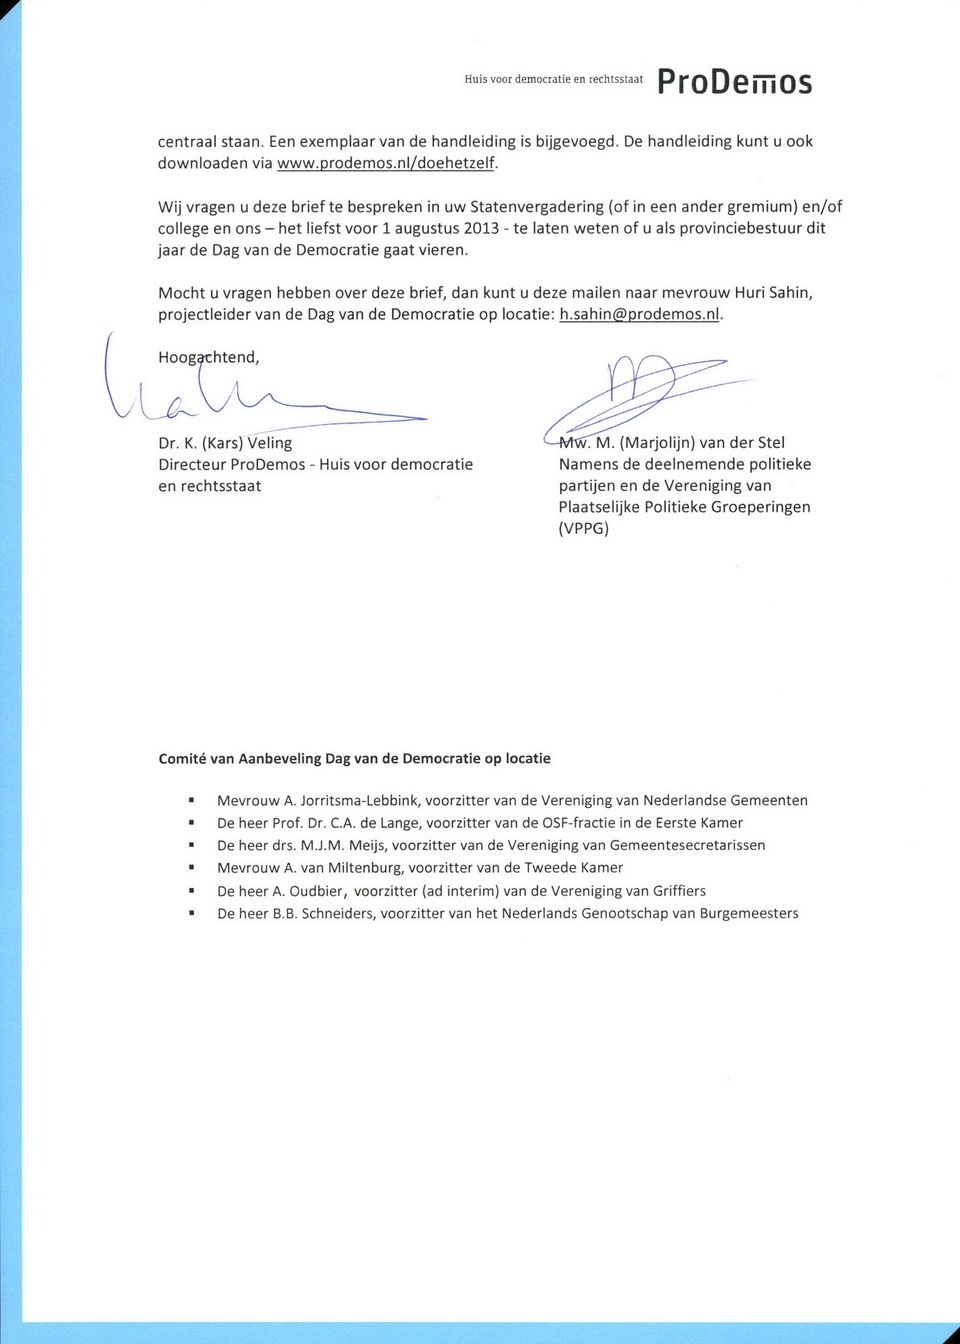 Dag van de Democratie gaat vieren. Mocht u vragen hebben over deze brief, dan kunt u deze mailen naar mevrouw Huri Sahin, projectleider van de Dag van de Democratie op locatie: h.sahinfgprodemos.nl.